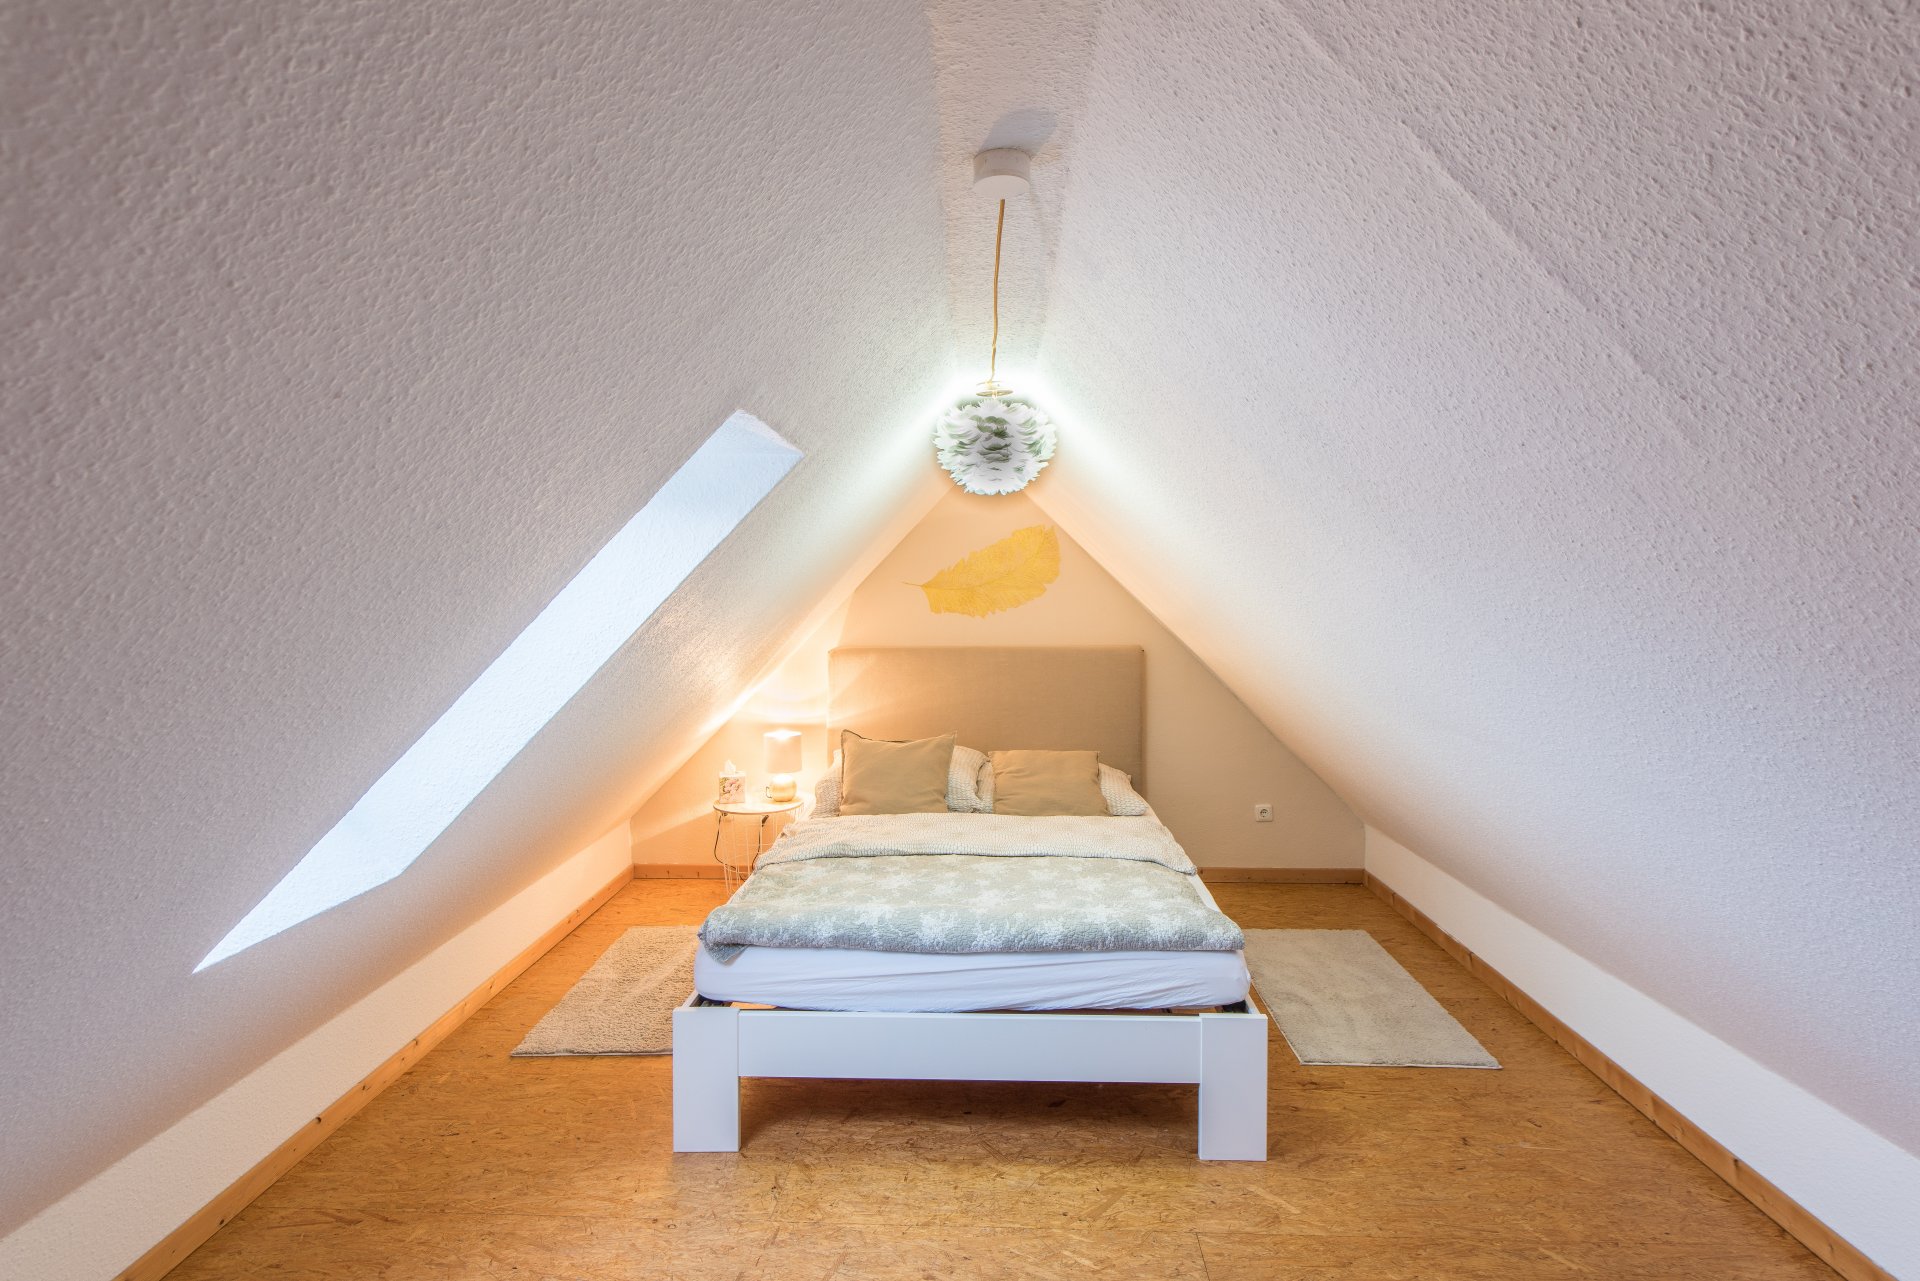 4. Zimmer im Spitzboden, gar nicht mal so klein, direkt davor die Galerieplatform - Oliver Reifferscheid - Immobilienmakler Darmstadt